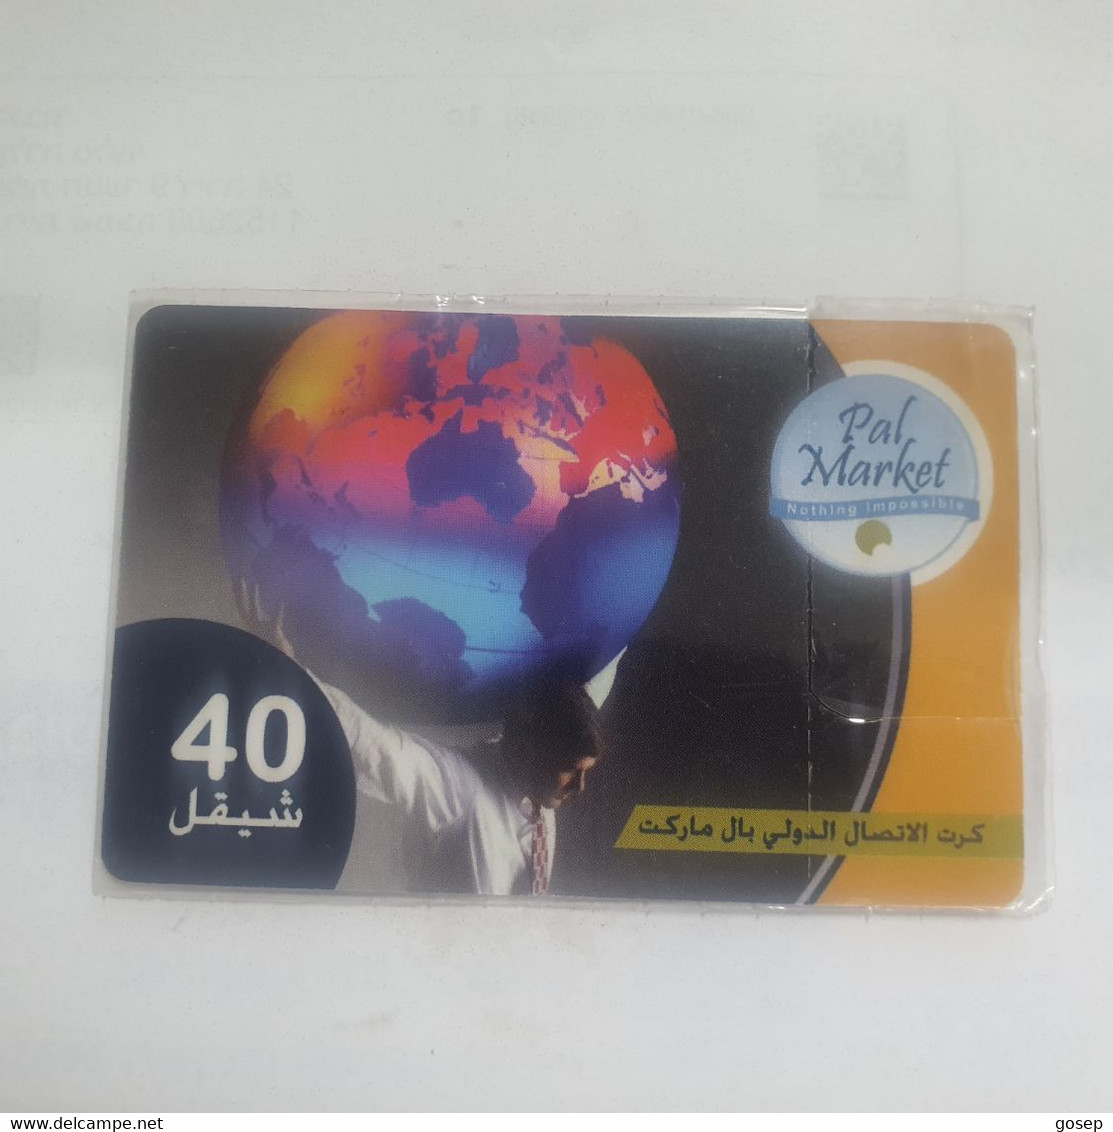 PALESTINE-(PA-G-0010F)-pal Market-(390)-(cod Enclosed-123701620)-(40₪)-(31.12.07)mint Card+1prepiad Free - Palästina